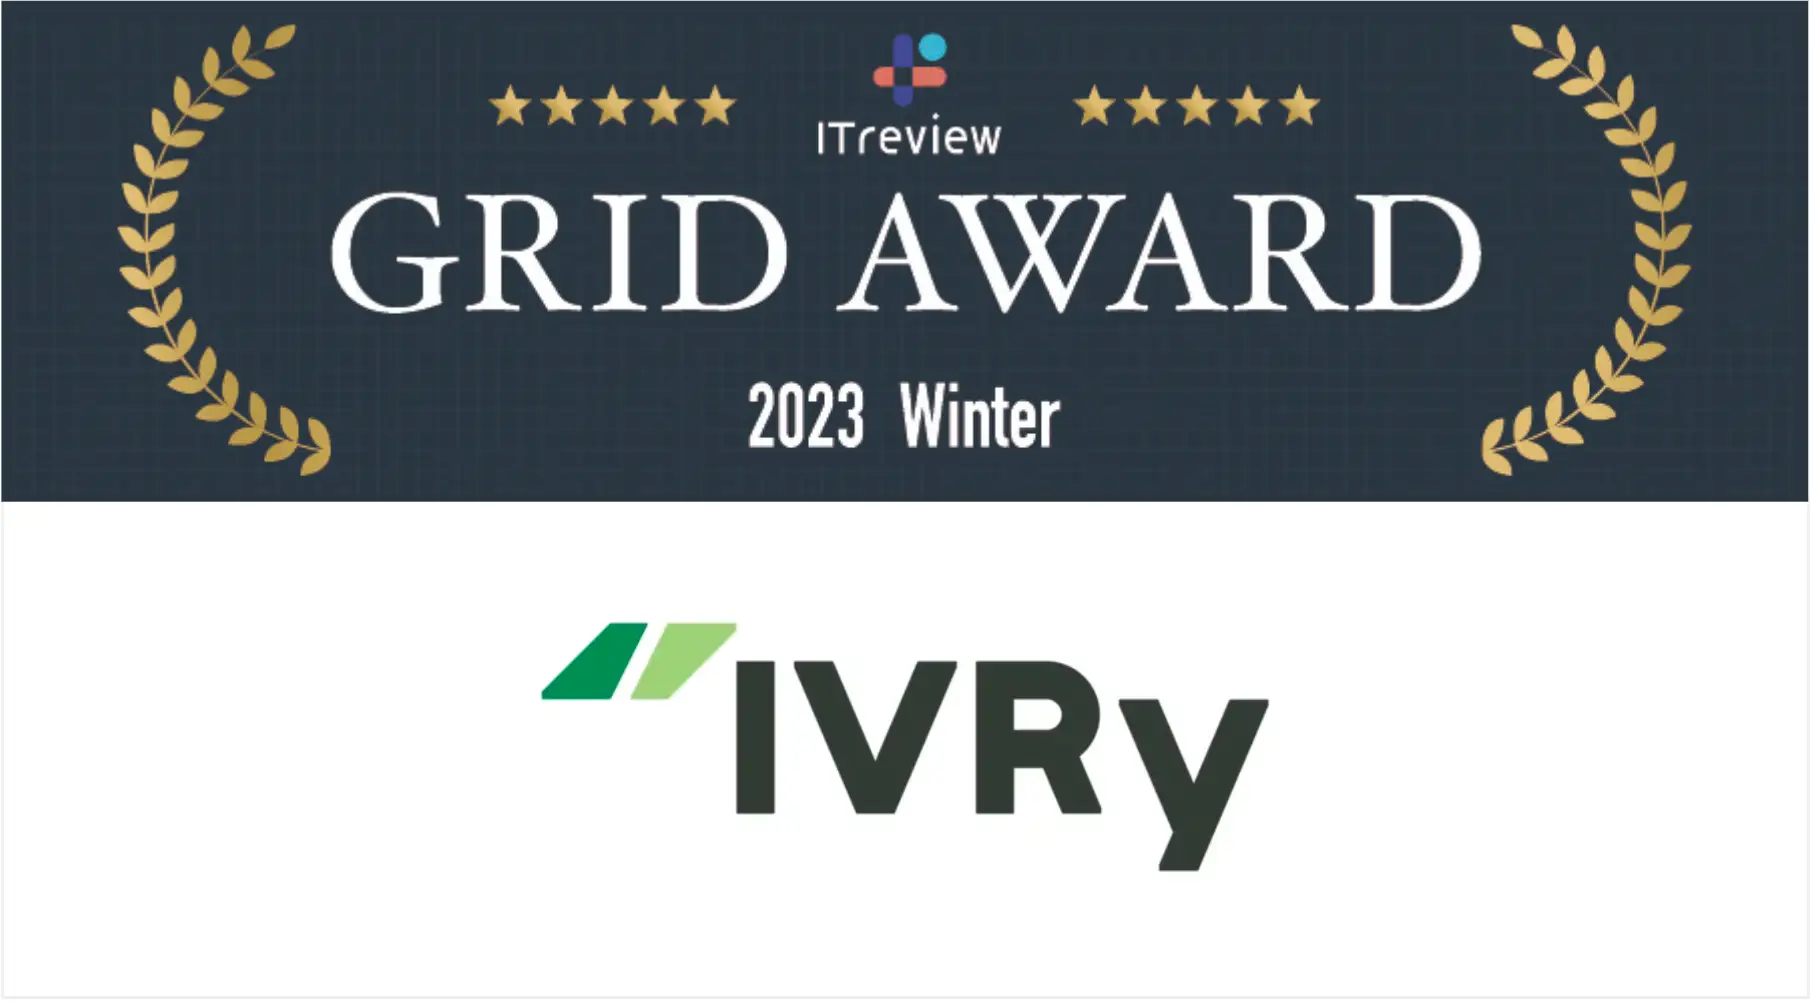 株式会社IVRy（本社：東京都台東区、代表取締役CEO：奥西 亮賀、以下「当社」）は、当社が提供する電話自動応答サービス「IVRy（アイブリー）」が、アイティクラウド株式会社運営の「ITreview Grid Award 2023 Winter」のIVR（自動音声応答）の総合部門でHigh Performer、中小部門でLeaderを受賞したことをお知らせします。